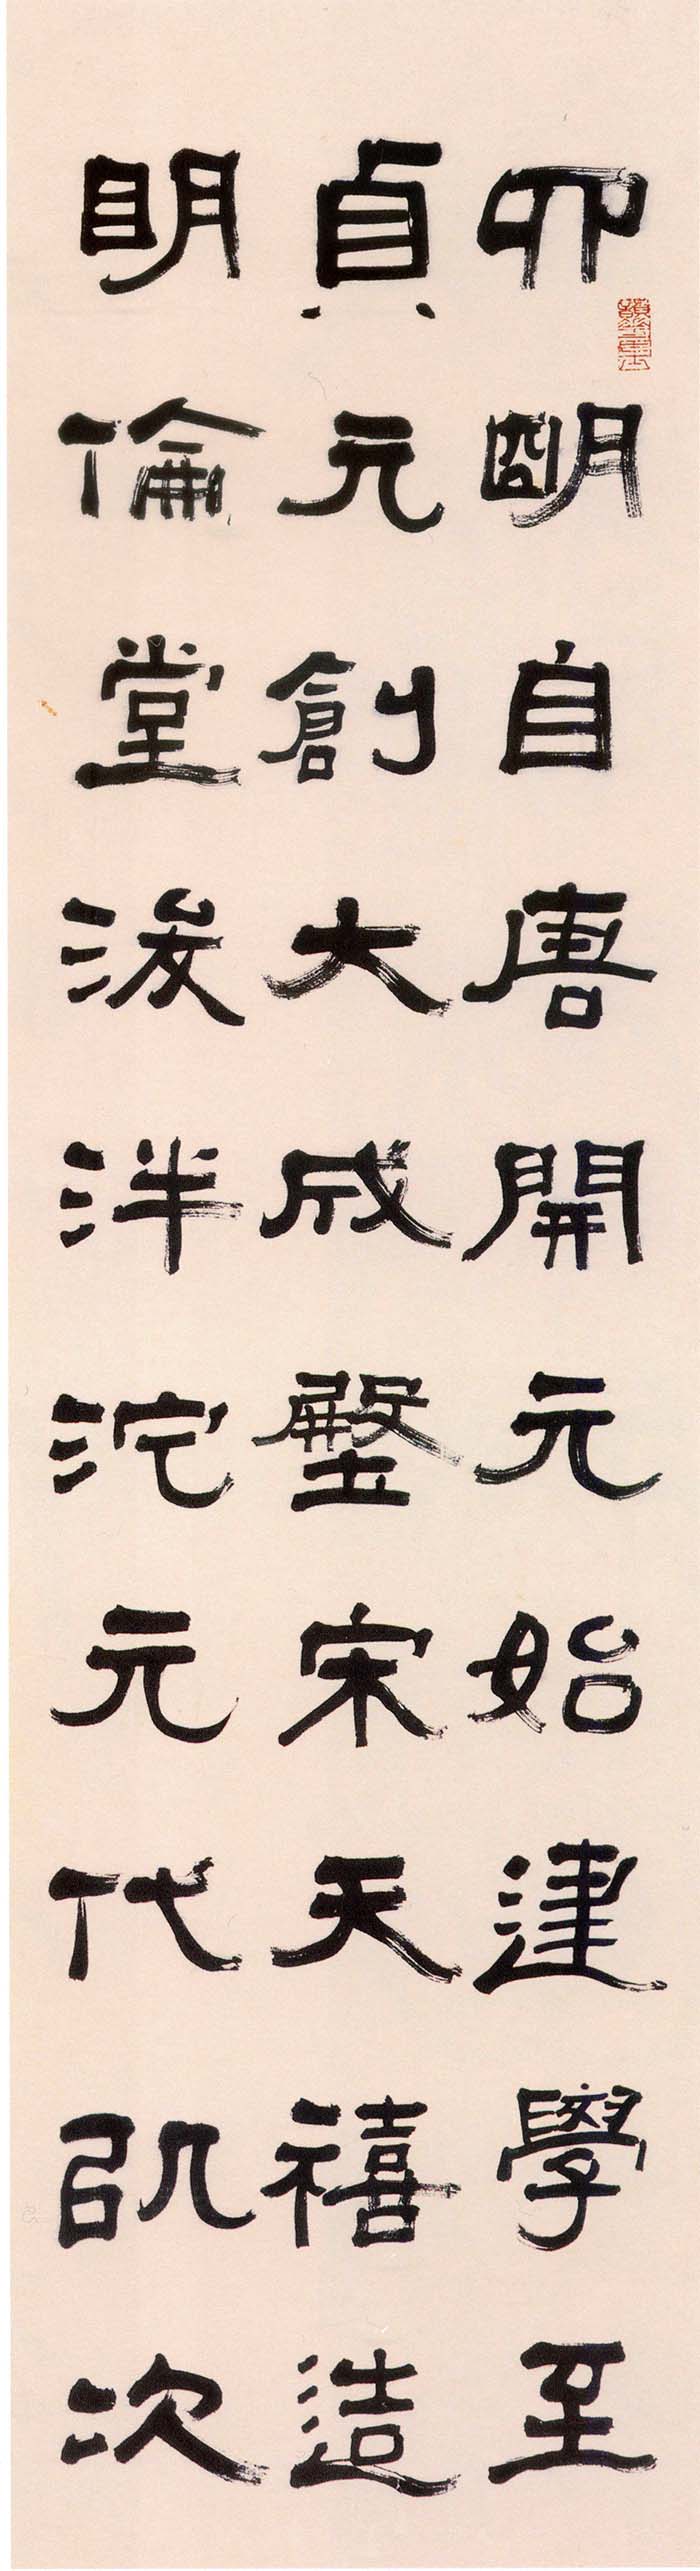 张祖翼《隶书集碑记四条屏》- 常州市博物馆藏 (图4)